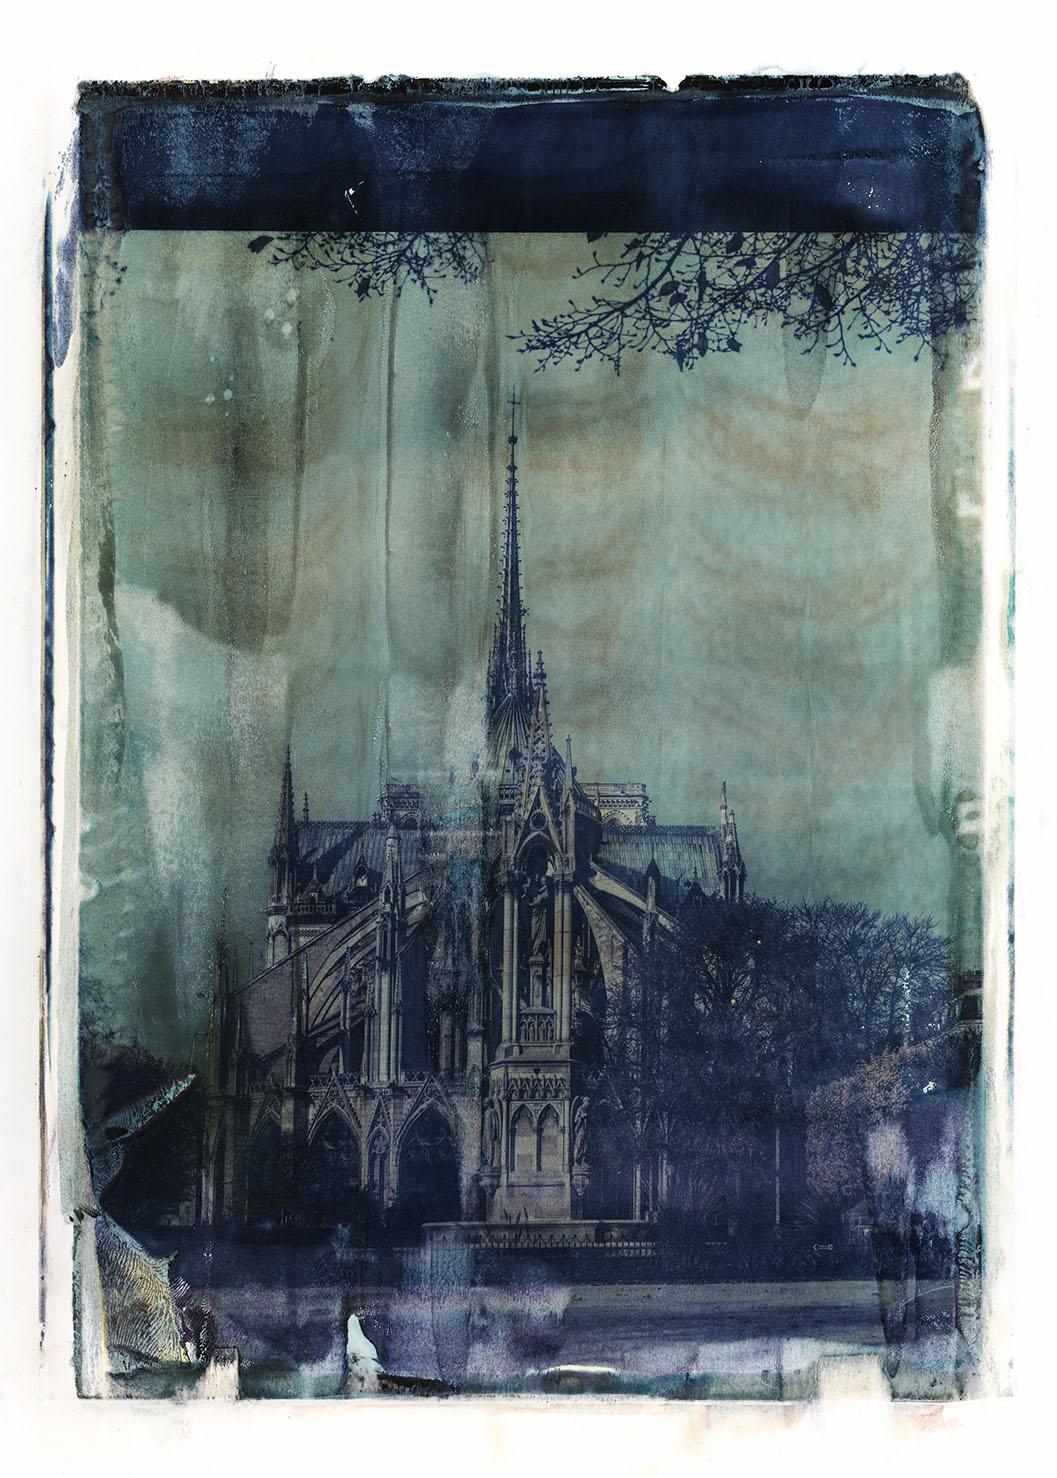 Landscape Photograph xulong zhang - Notre Dame 9 - Contemporain, 21e siècle, Polaroid grand format, Paris, Icons